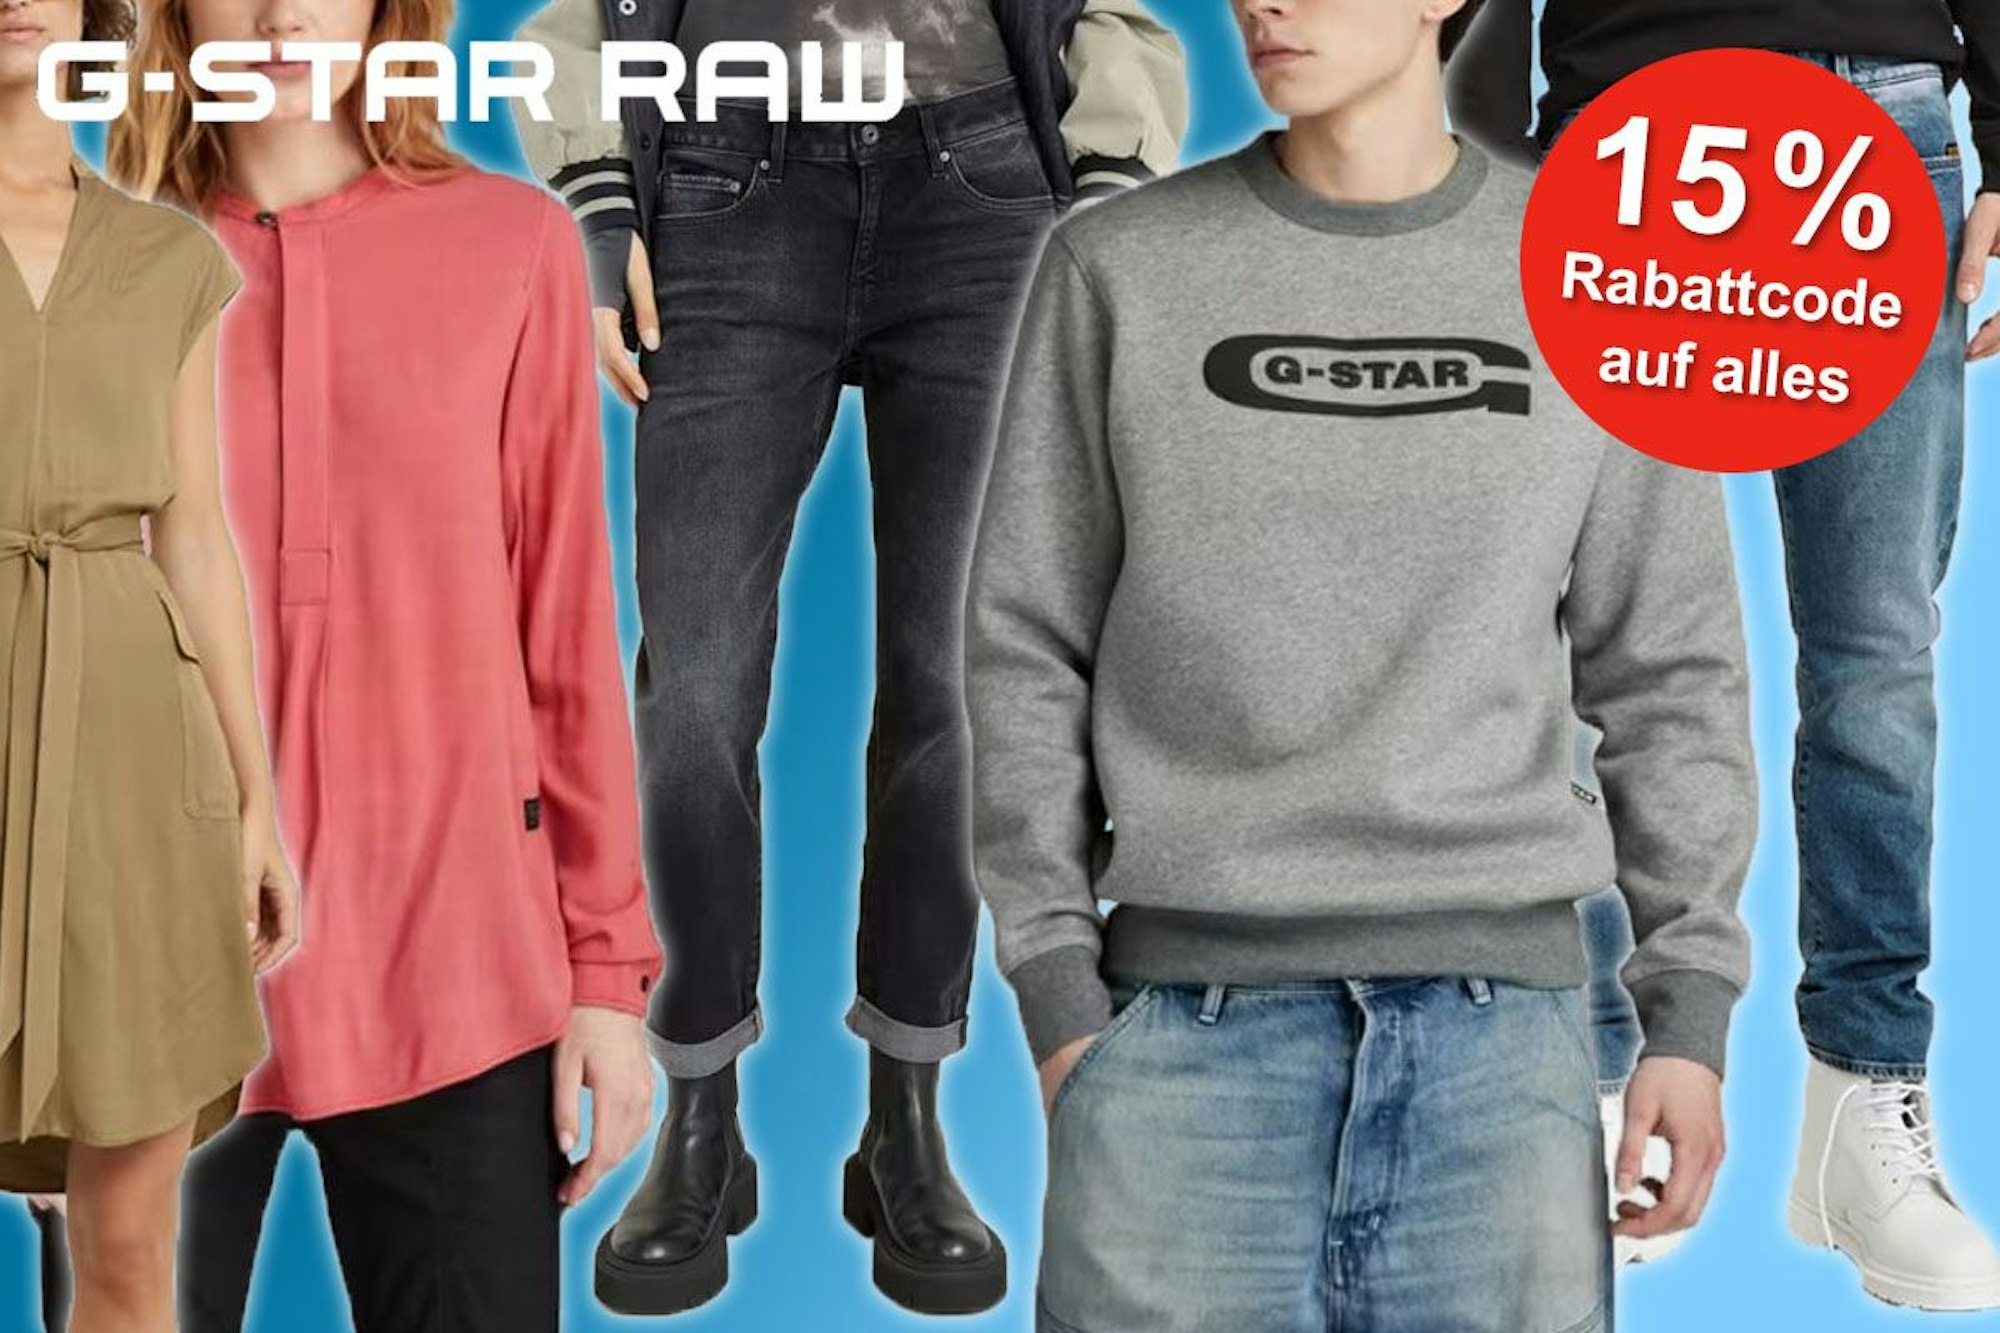 G-Star Raw Kleidung getragen von Fotomodellen, Kleid, Bluse, Jeans, Sweatshirt.